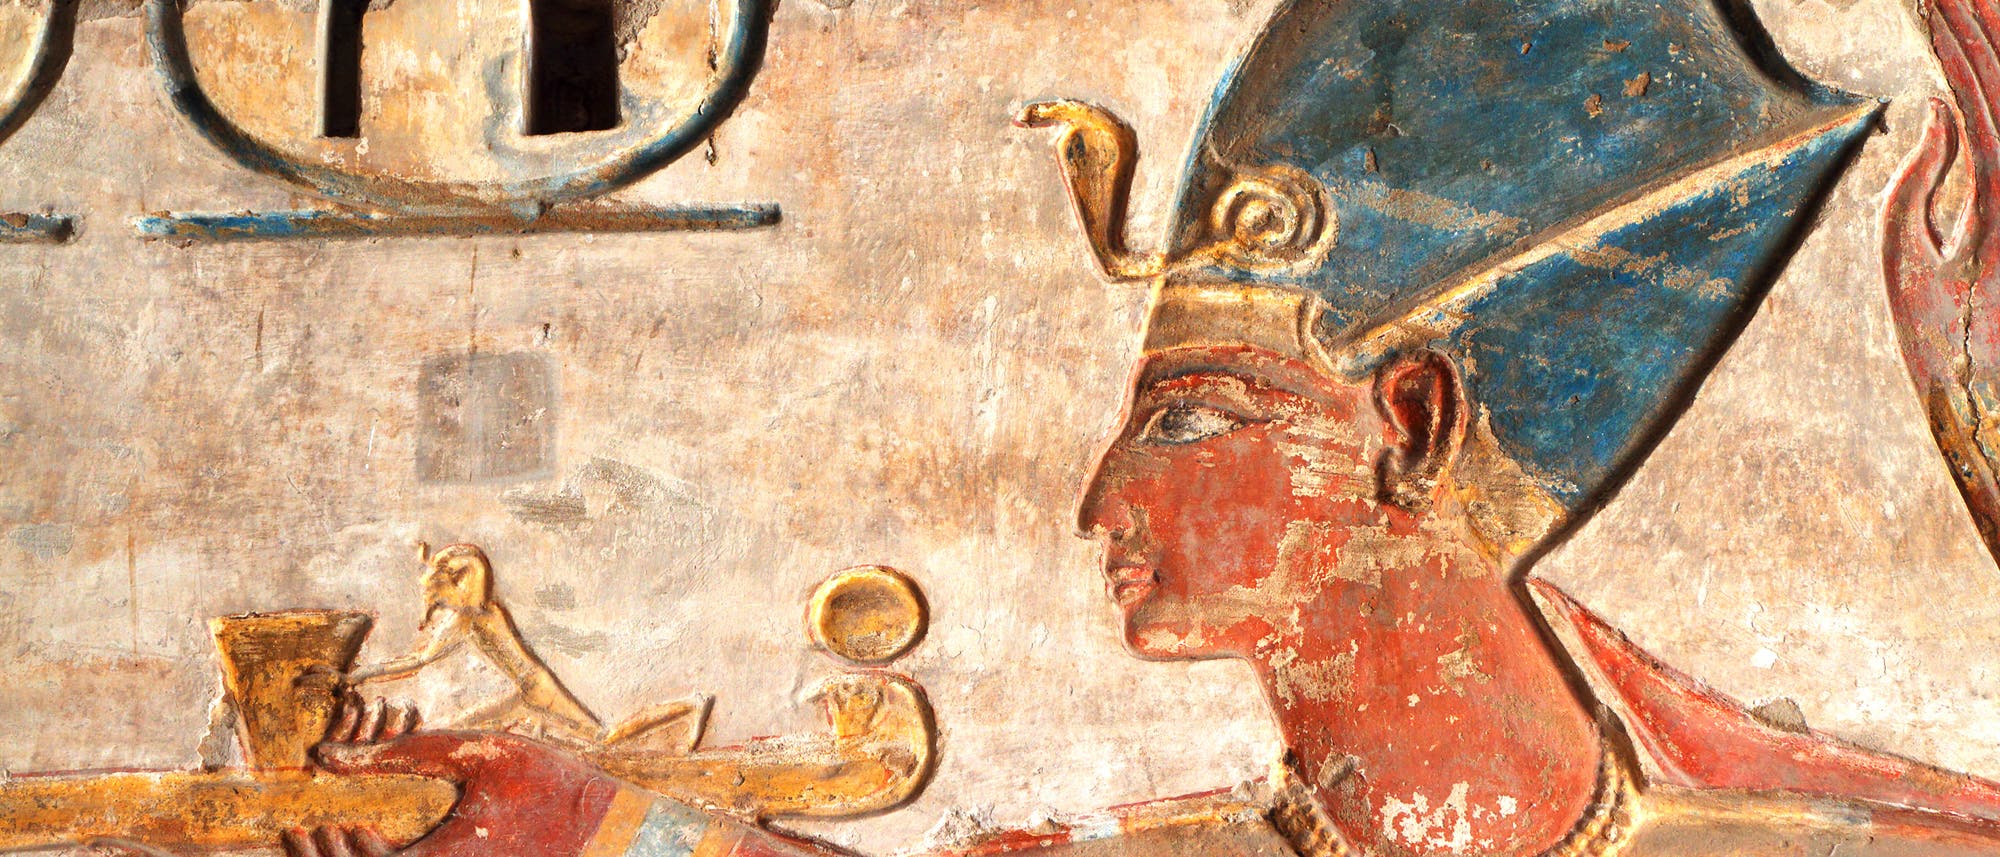 Ägyptischer Pharao (Symbolbild)